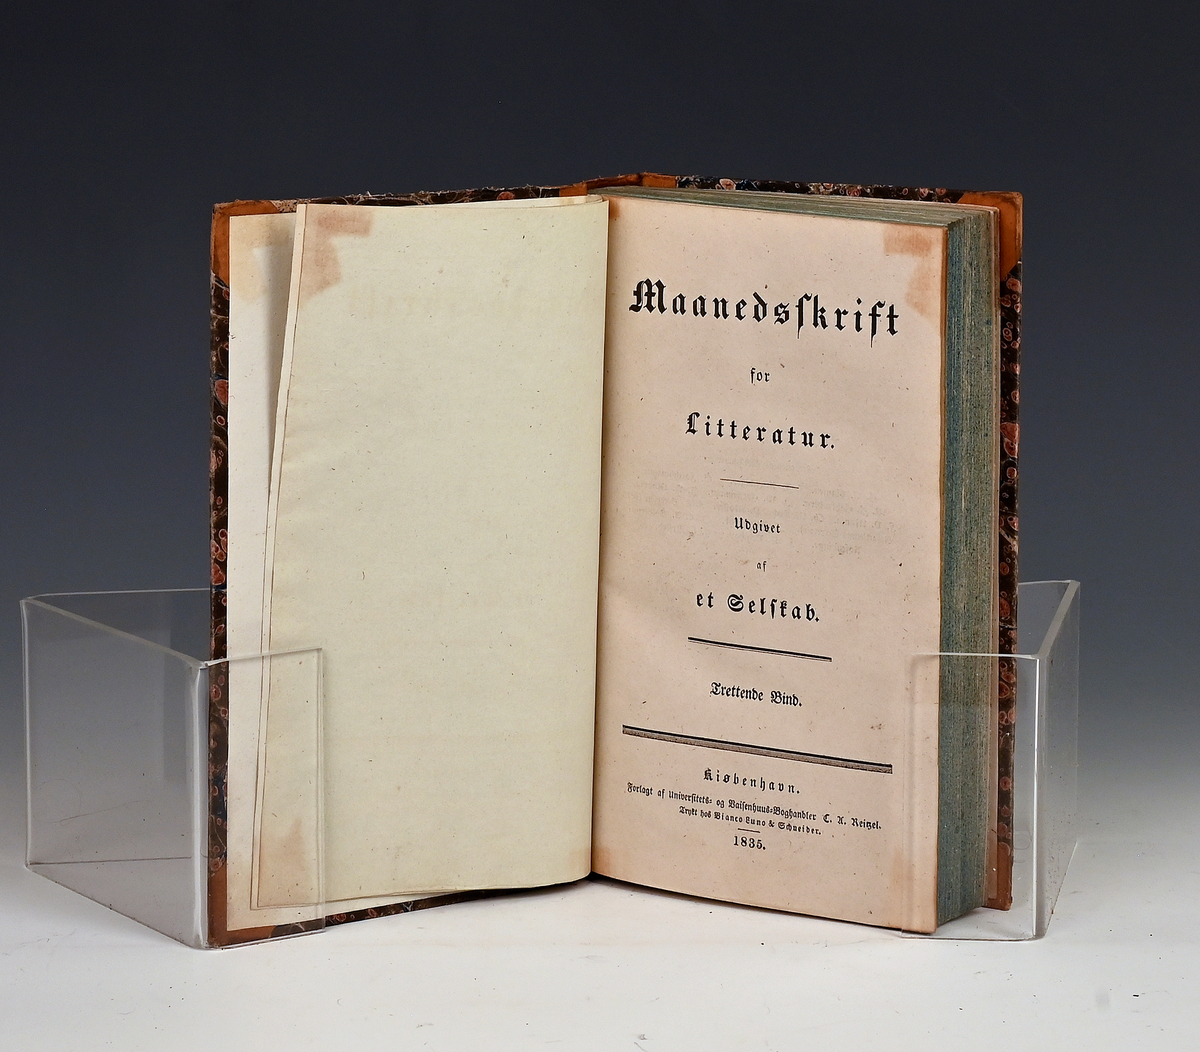 Maanedsskrift for litteratur. Trettende bind. Kbhv. 1835.